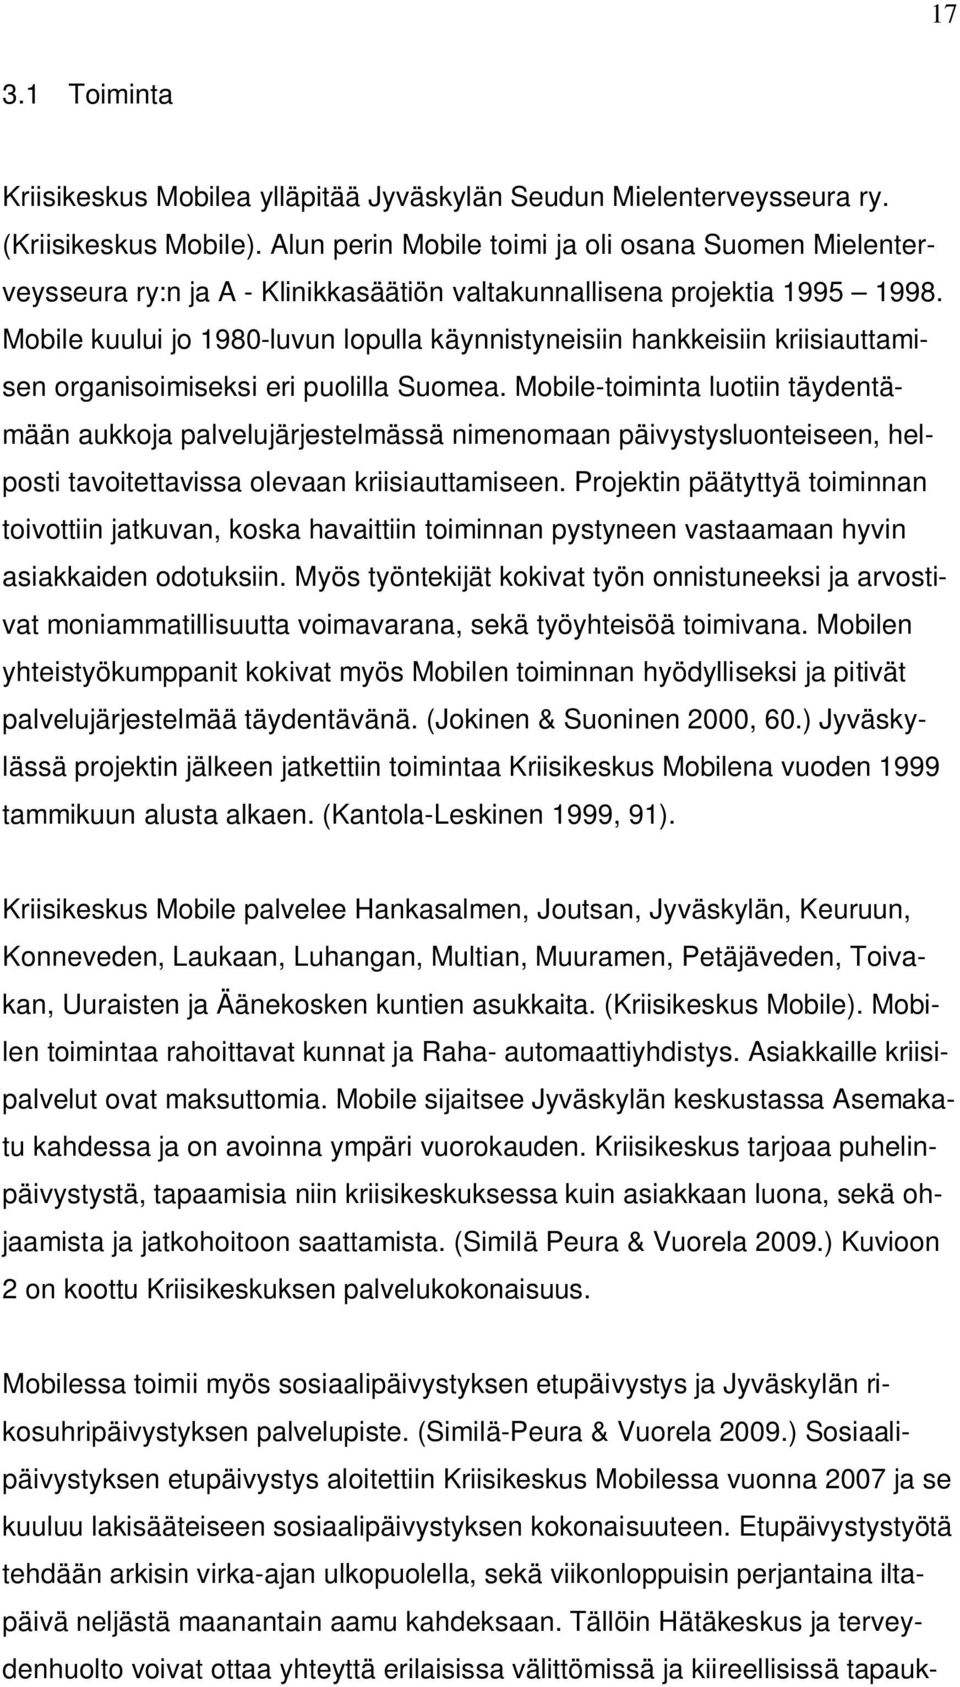 Mobile kuului jo 1980-luvun lopulla käynnistyneisiin hankkeisiin kriisiauttamisen organisoimiseksi eri puolilla Suomea.